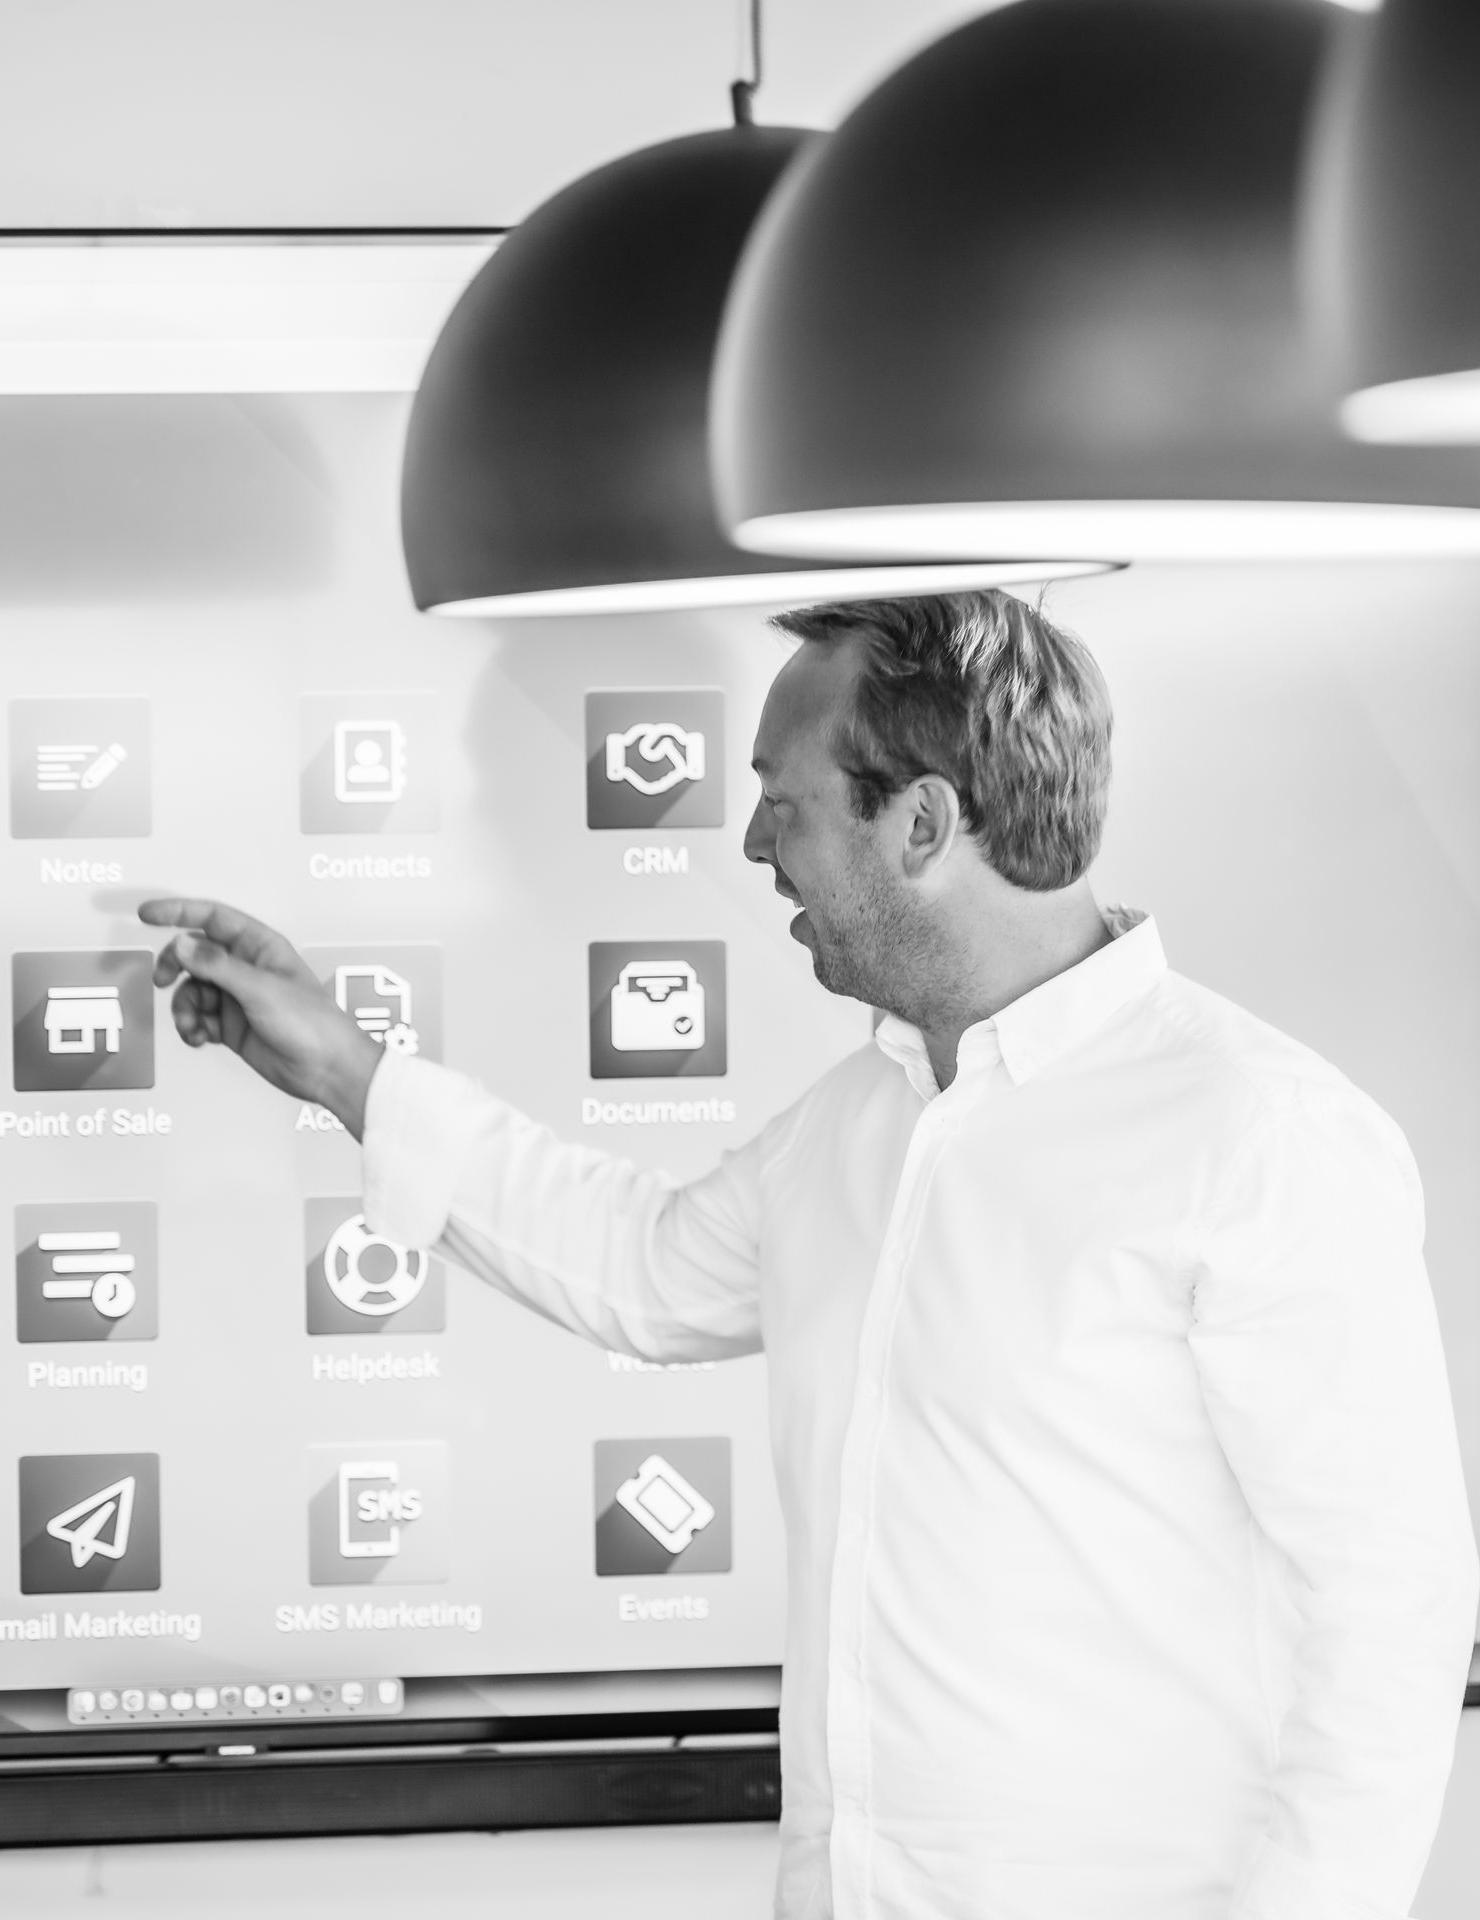 notre fondateur Arnaud Percy fondateur de the service company partenaire odoo indique les applications odoo sur un écran dans une pièce avec des grosses lampes